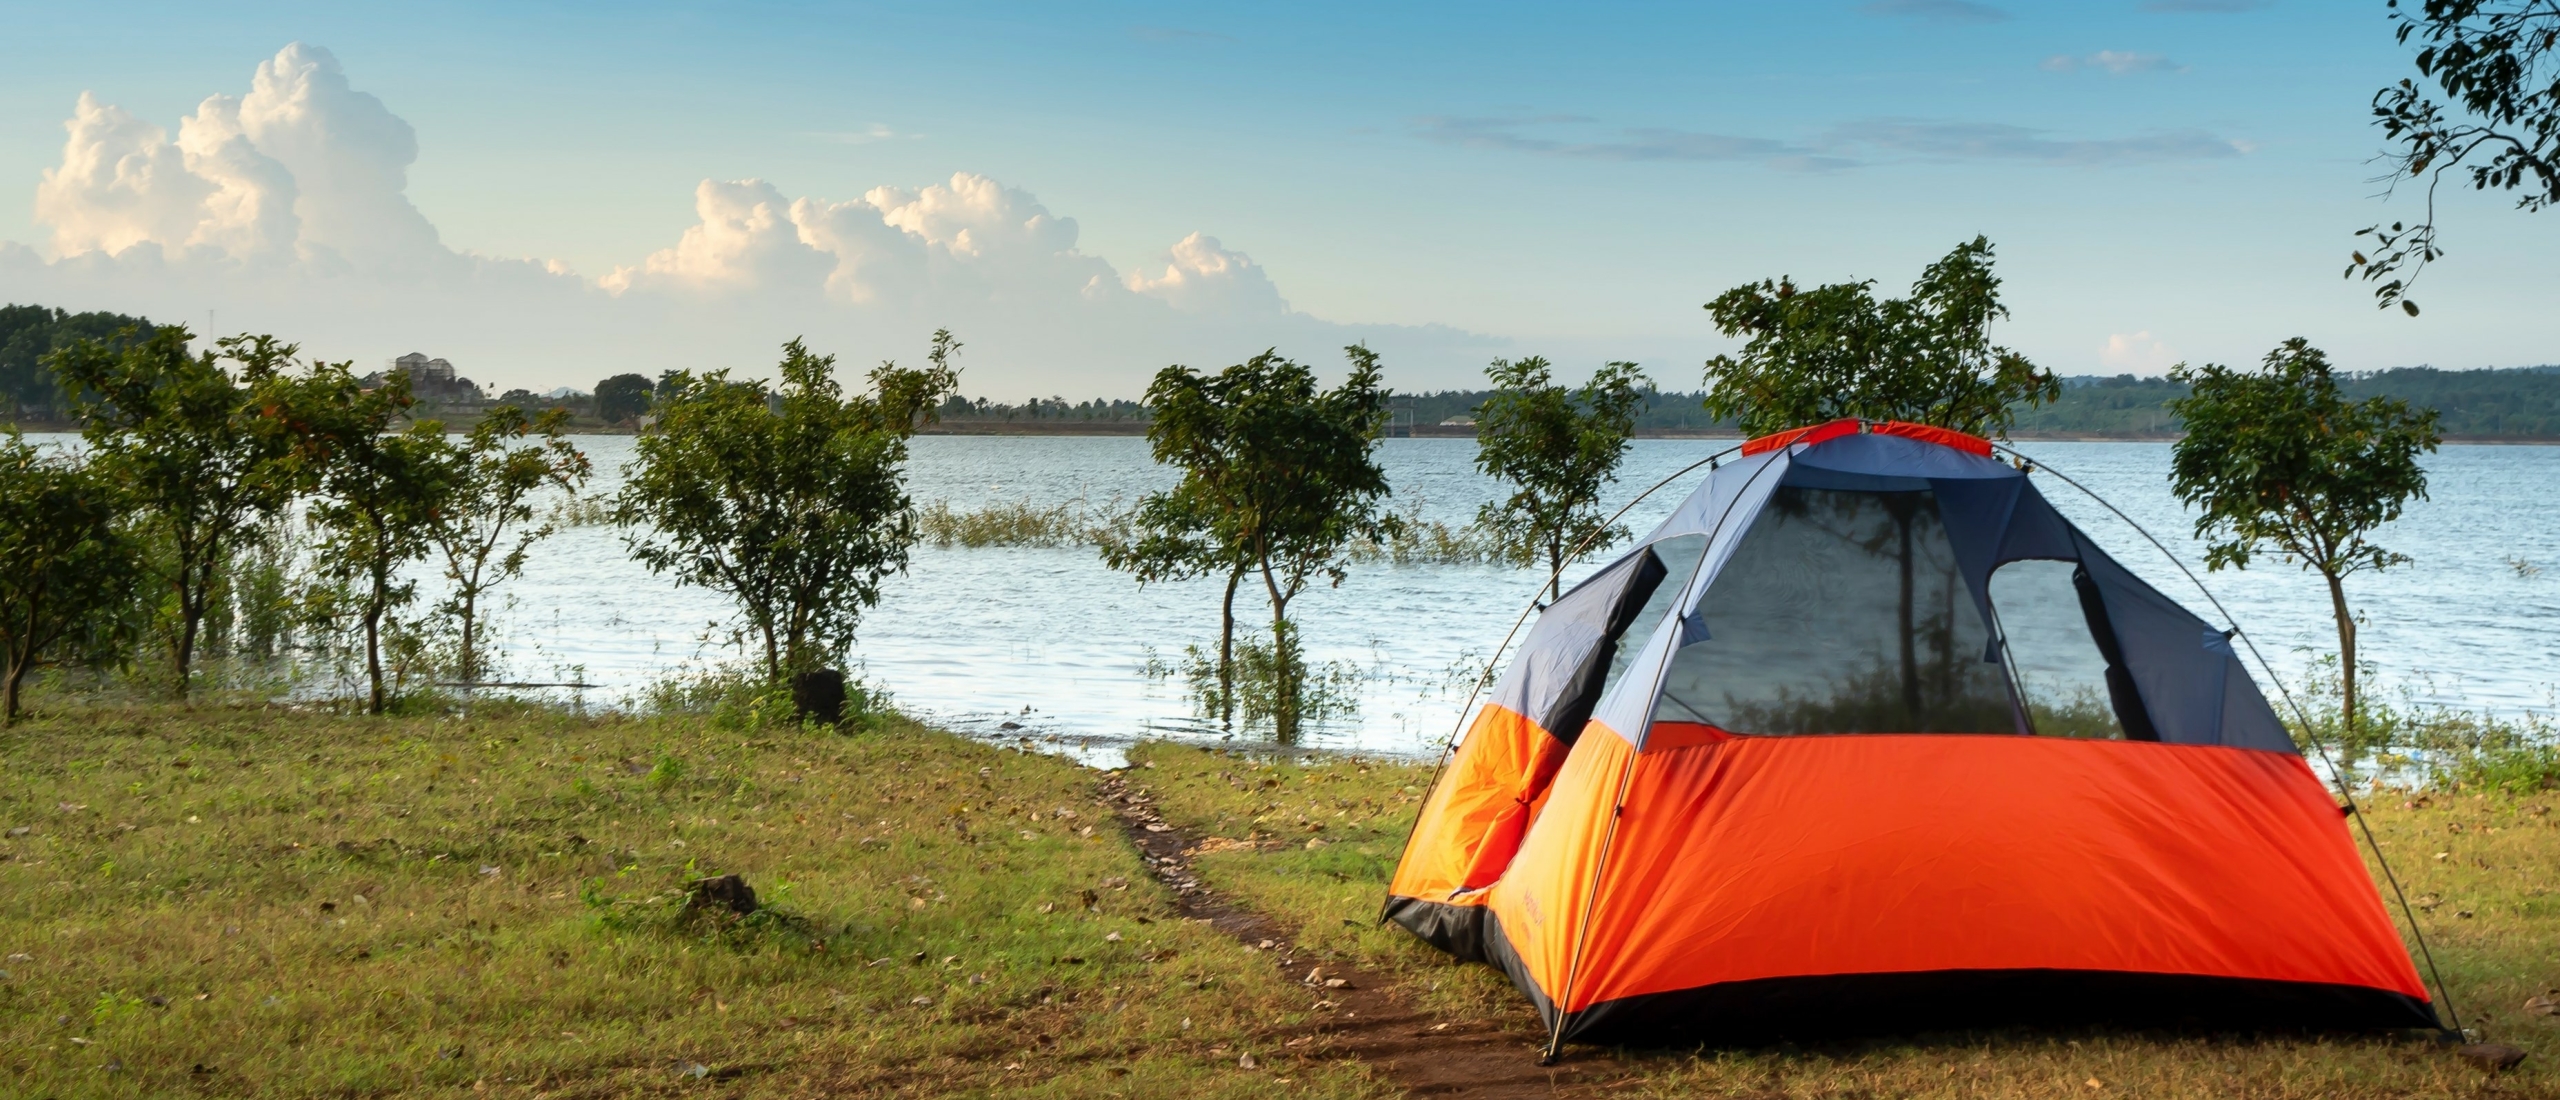 Campingrally 2022: Welke aandelen profiteren het meeste?